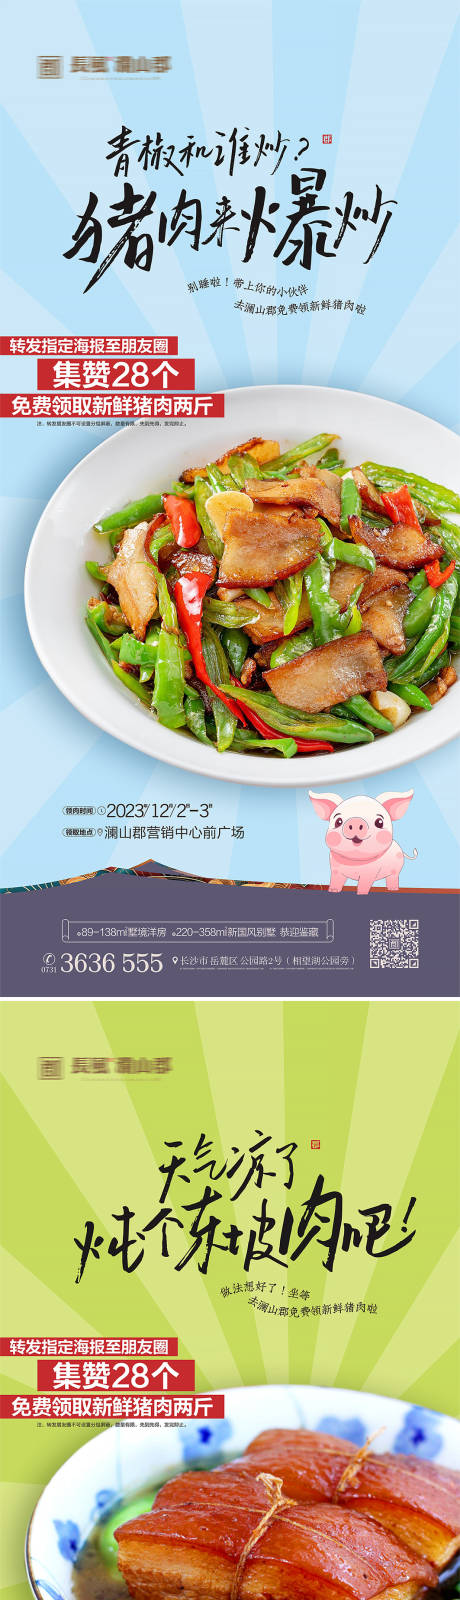 地产送猪肉活动系列海报